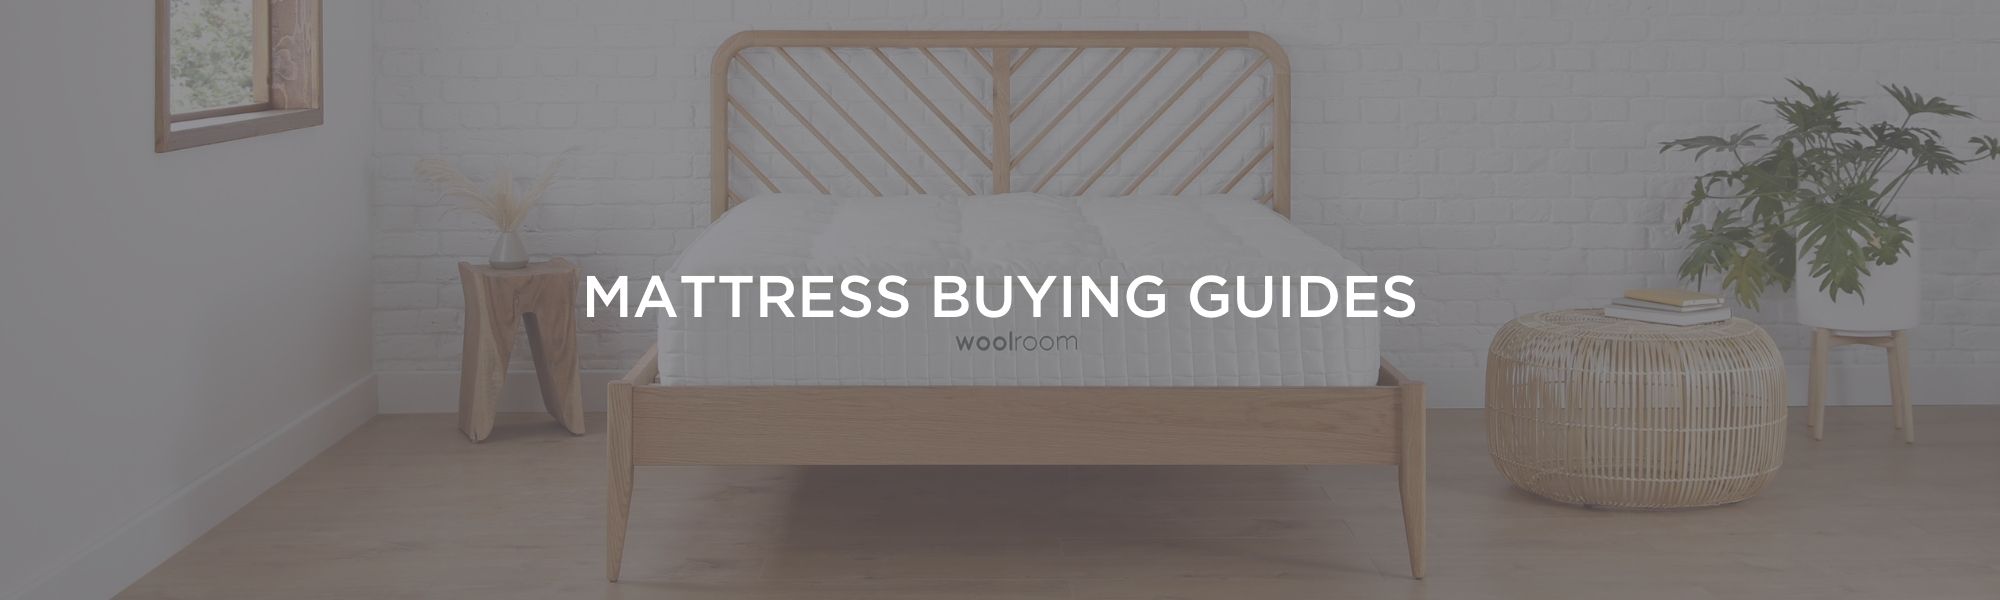 mattress buying guides